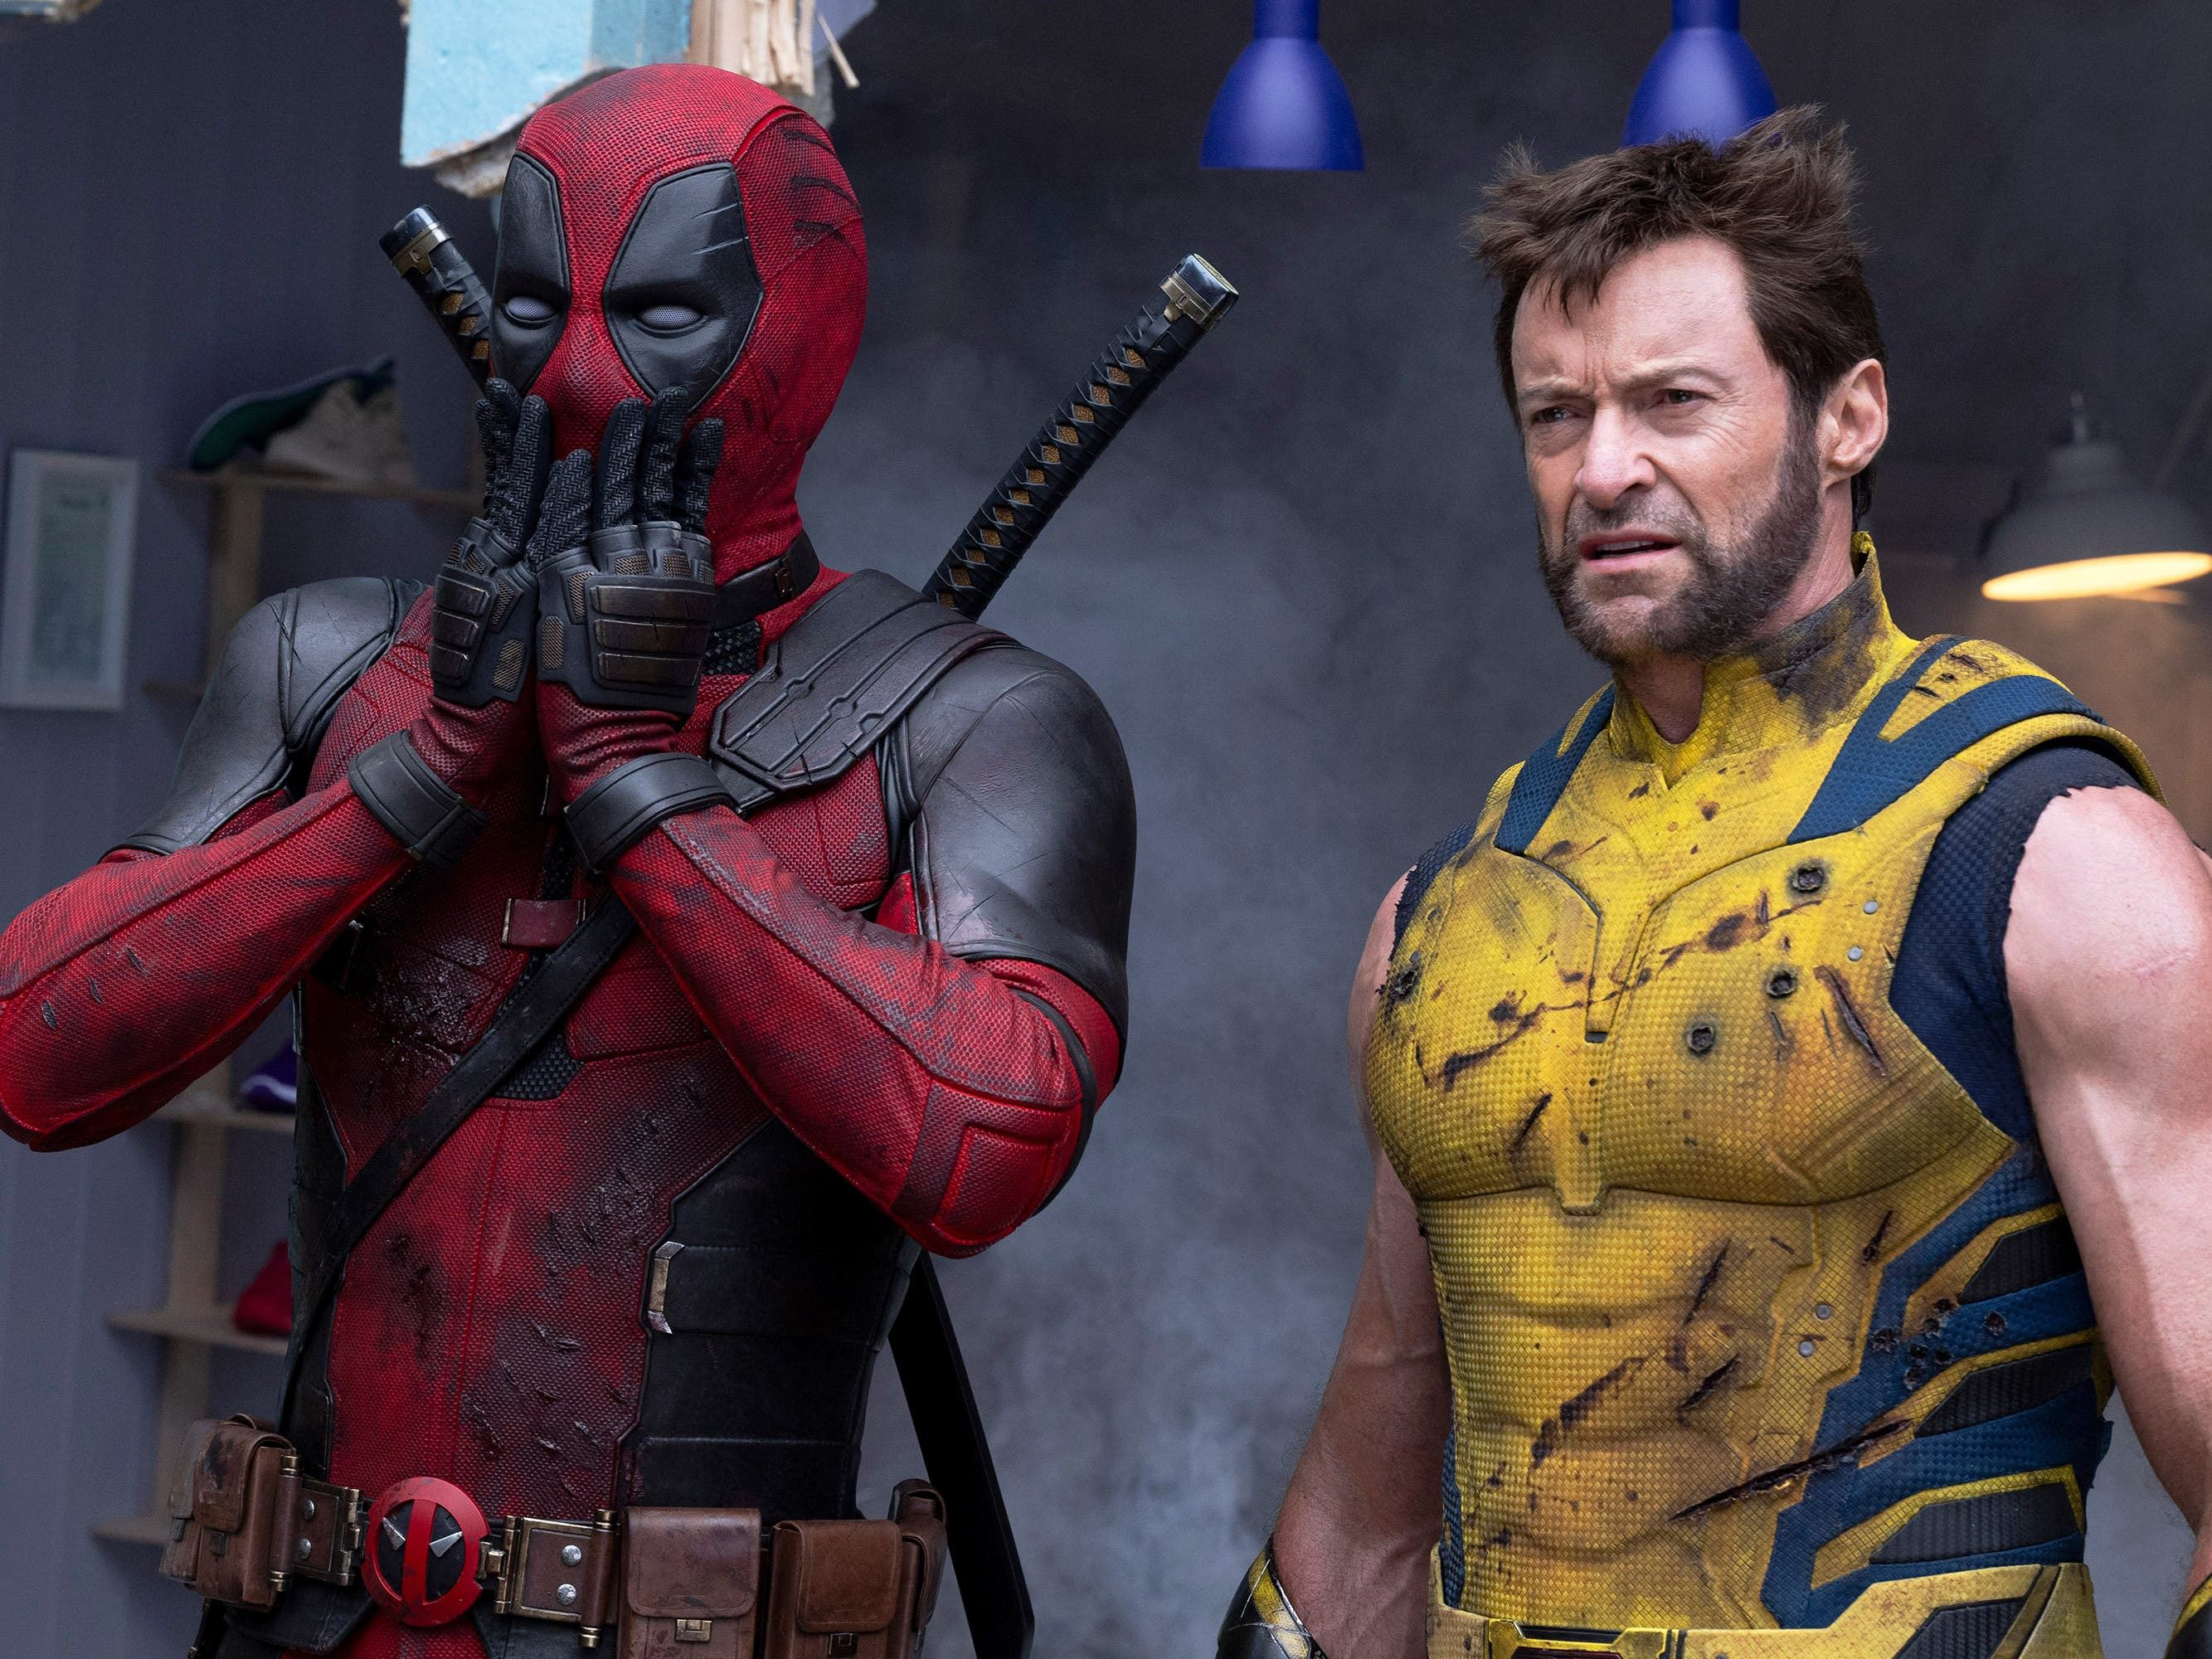 Deadpool & Wolverine secures spot in top 10 film openings in US cinemas